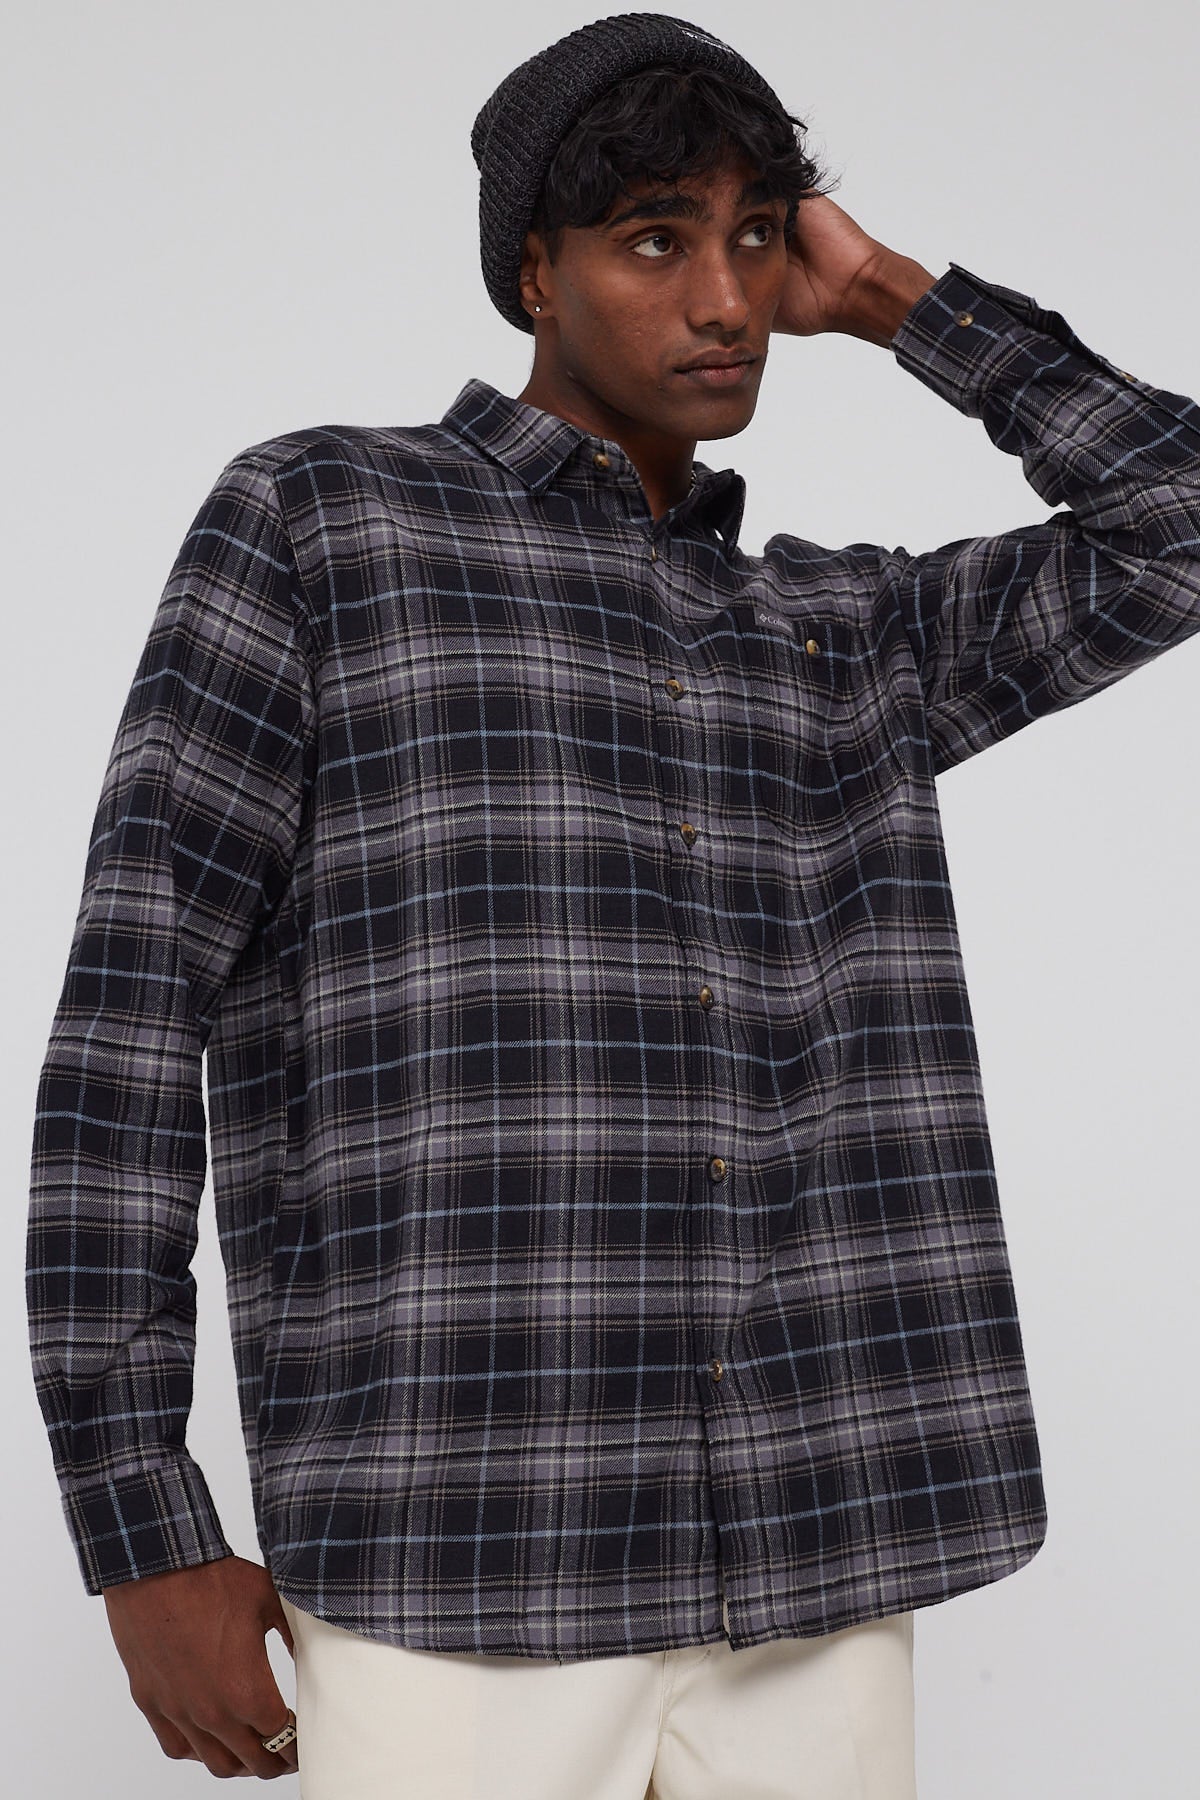 Cornell WoodsTM Flannel Long Sleeve Shirt Multi Tartan